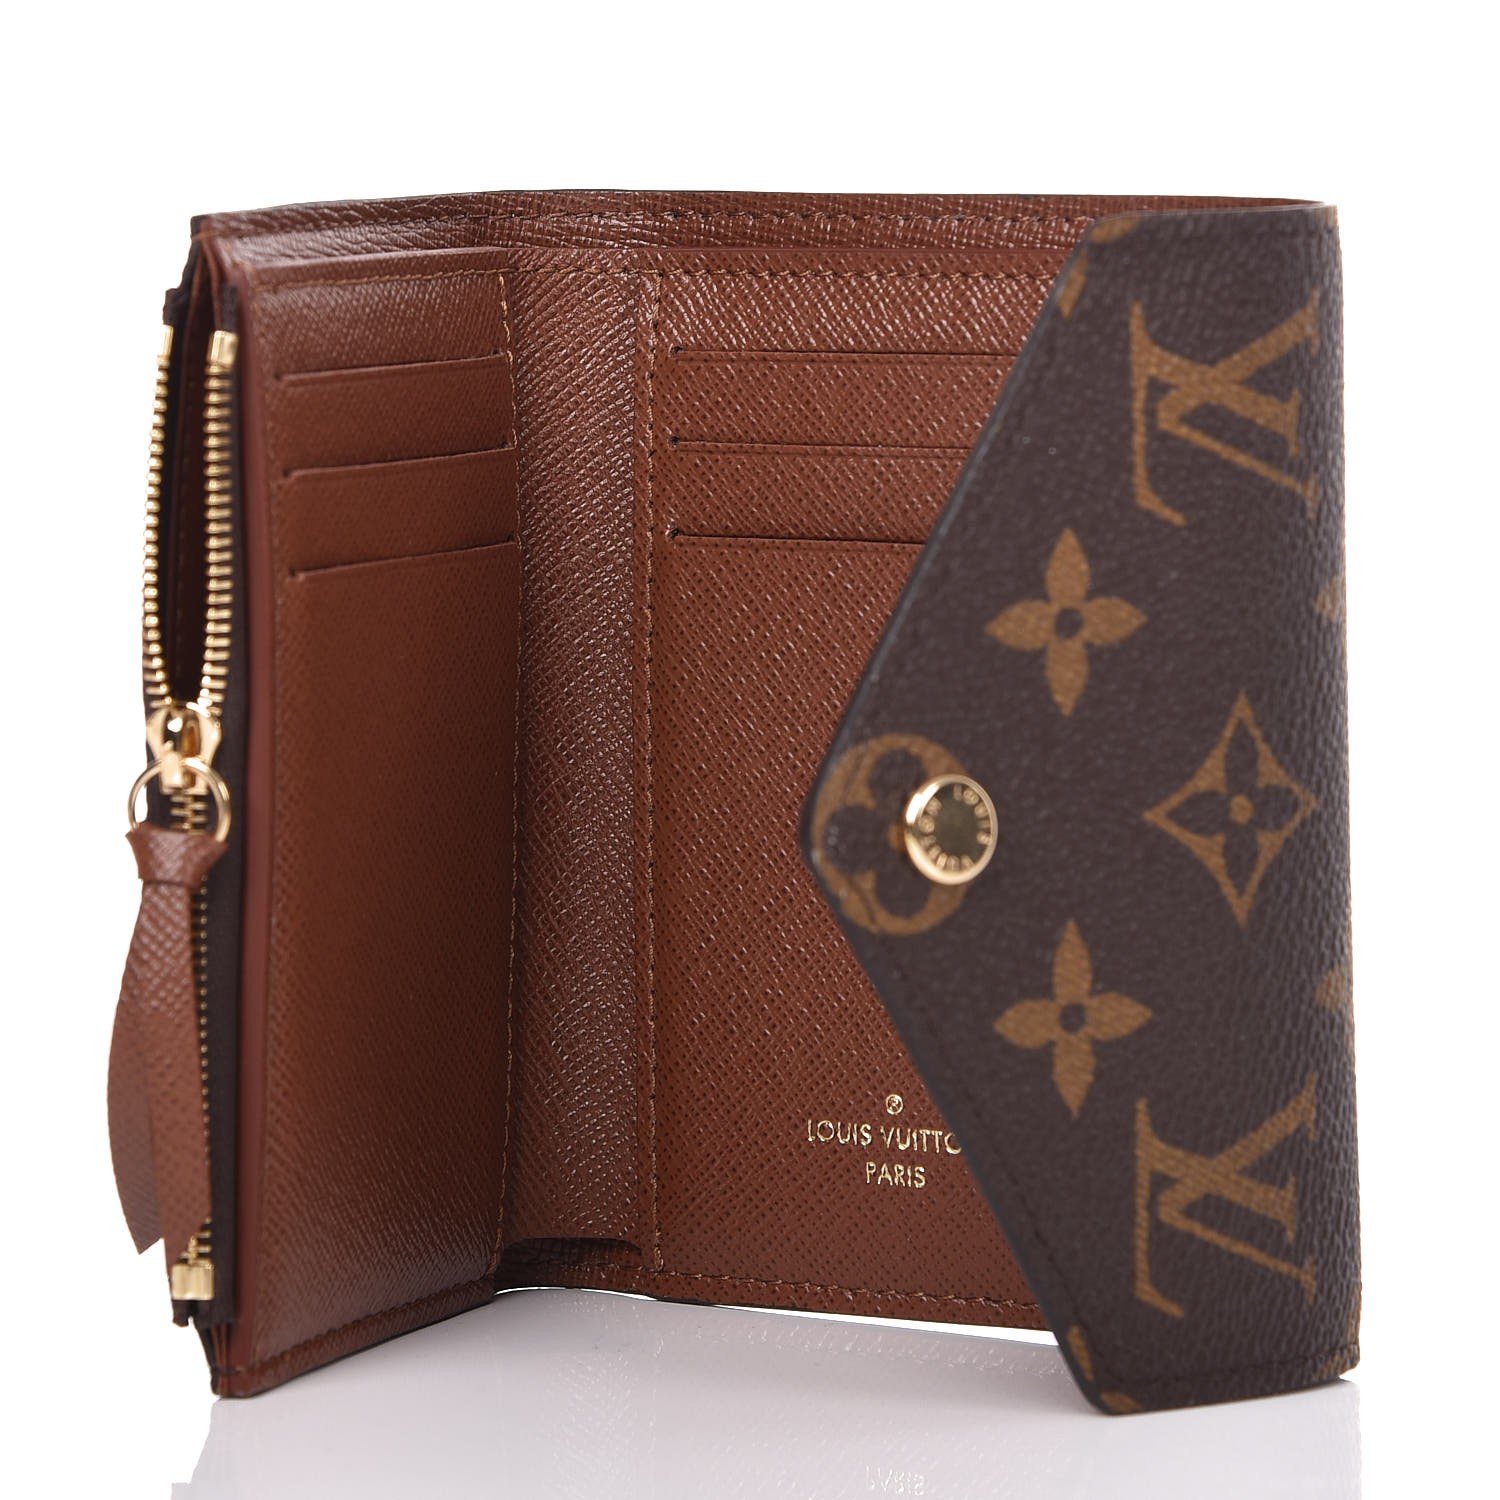 Unboxing my Louis Vuitton Victorine wallet #louisvuitton #lv